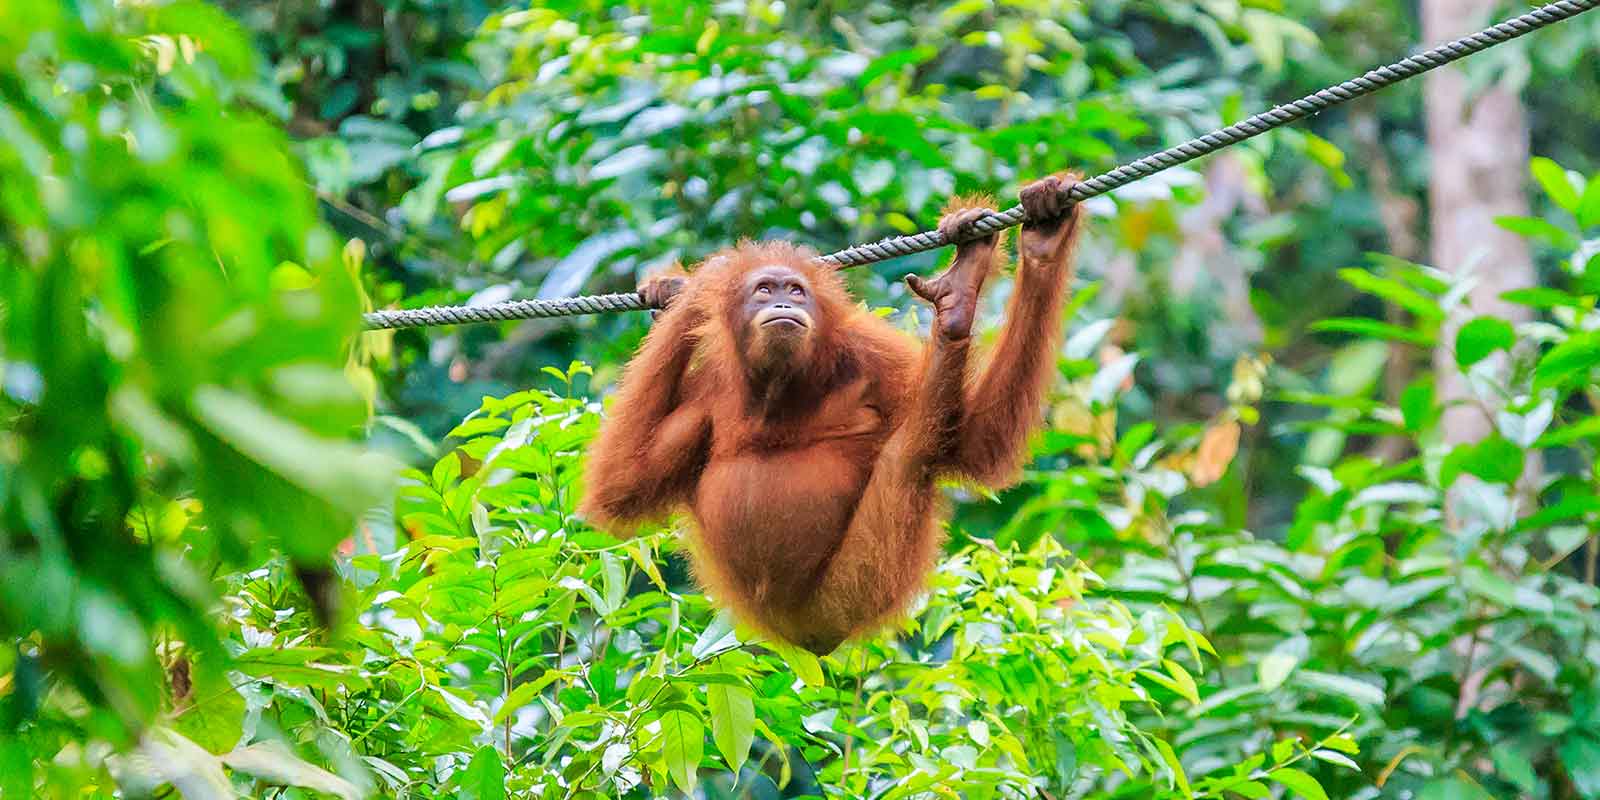 Orangutan playing at Sepilok Orangutan Sanctuary